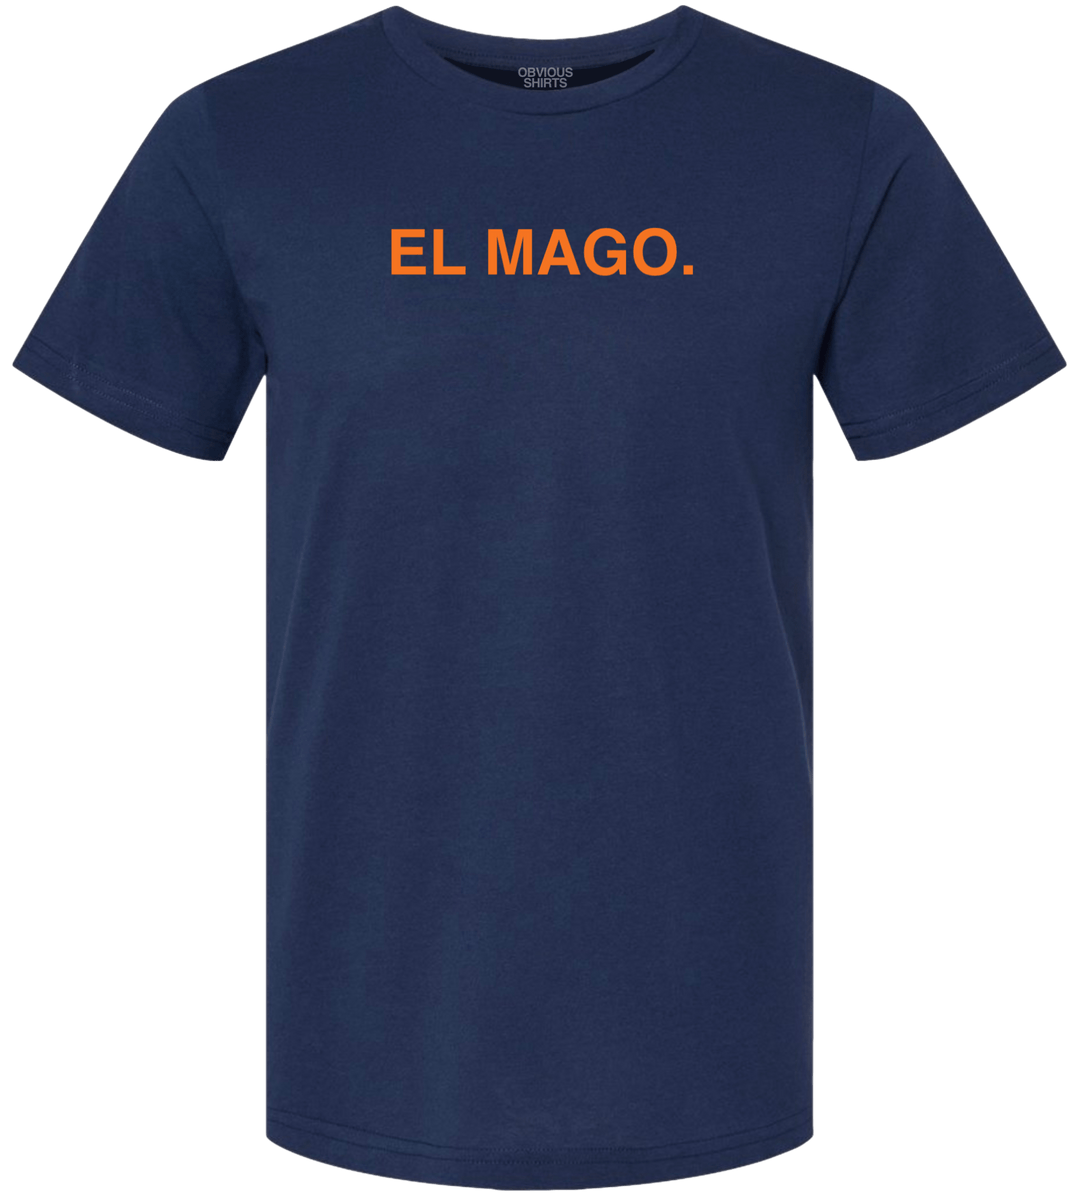 EL MAGO. - OBVIOUS SHIRTS